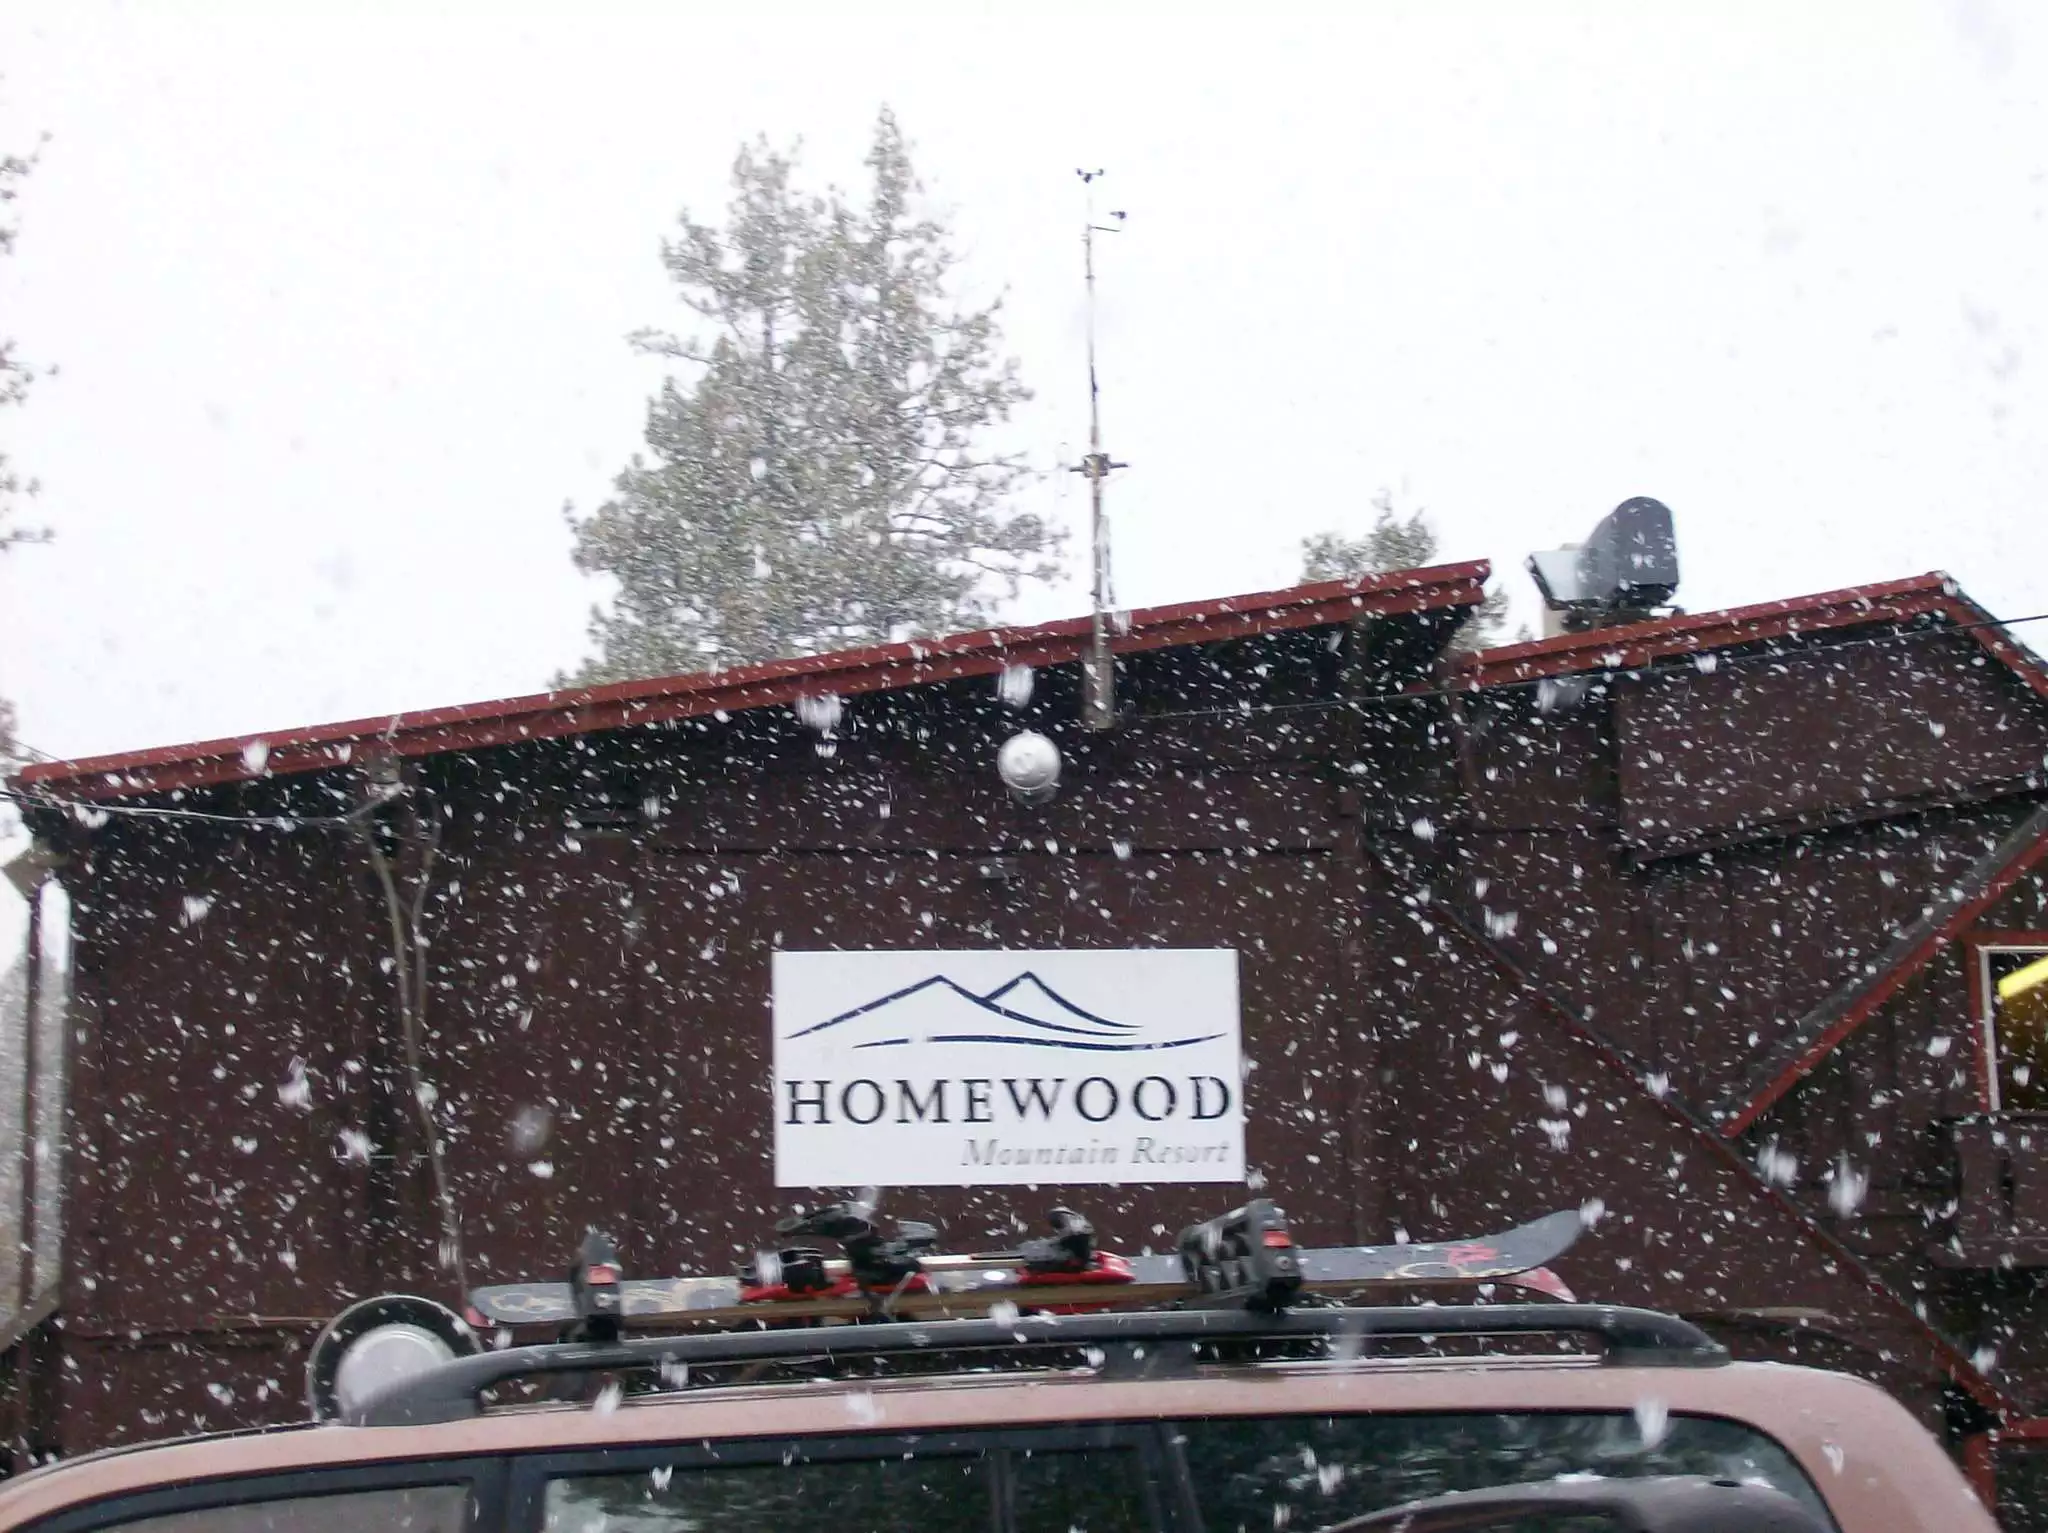 Homewood Ski Resort